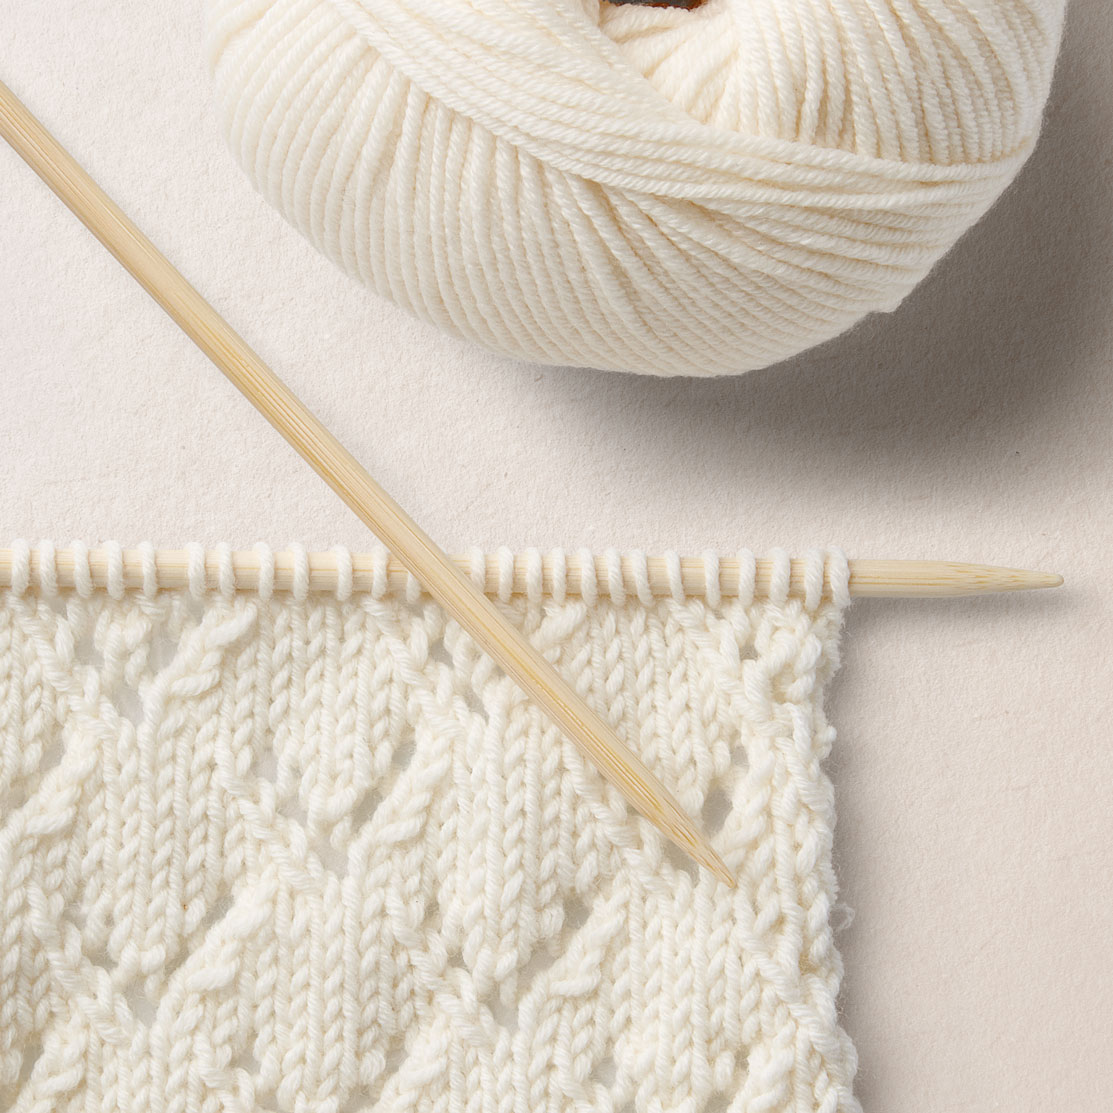 Van Dyck knit pattern WOOL SCHOOL HAPPY KNITTING